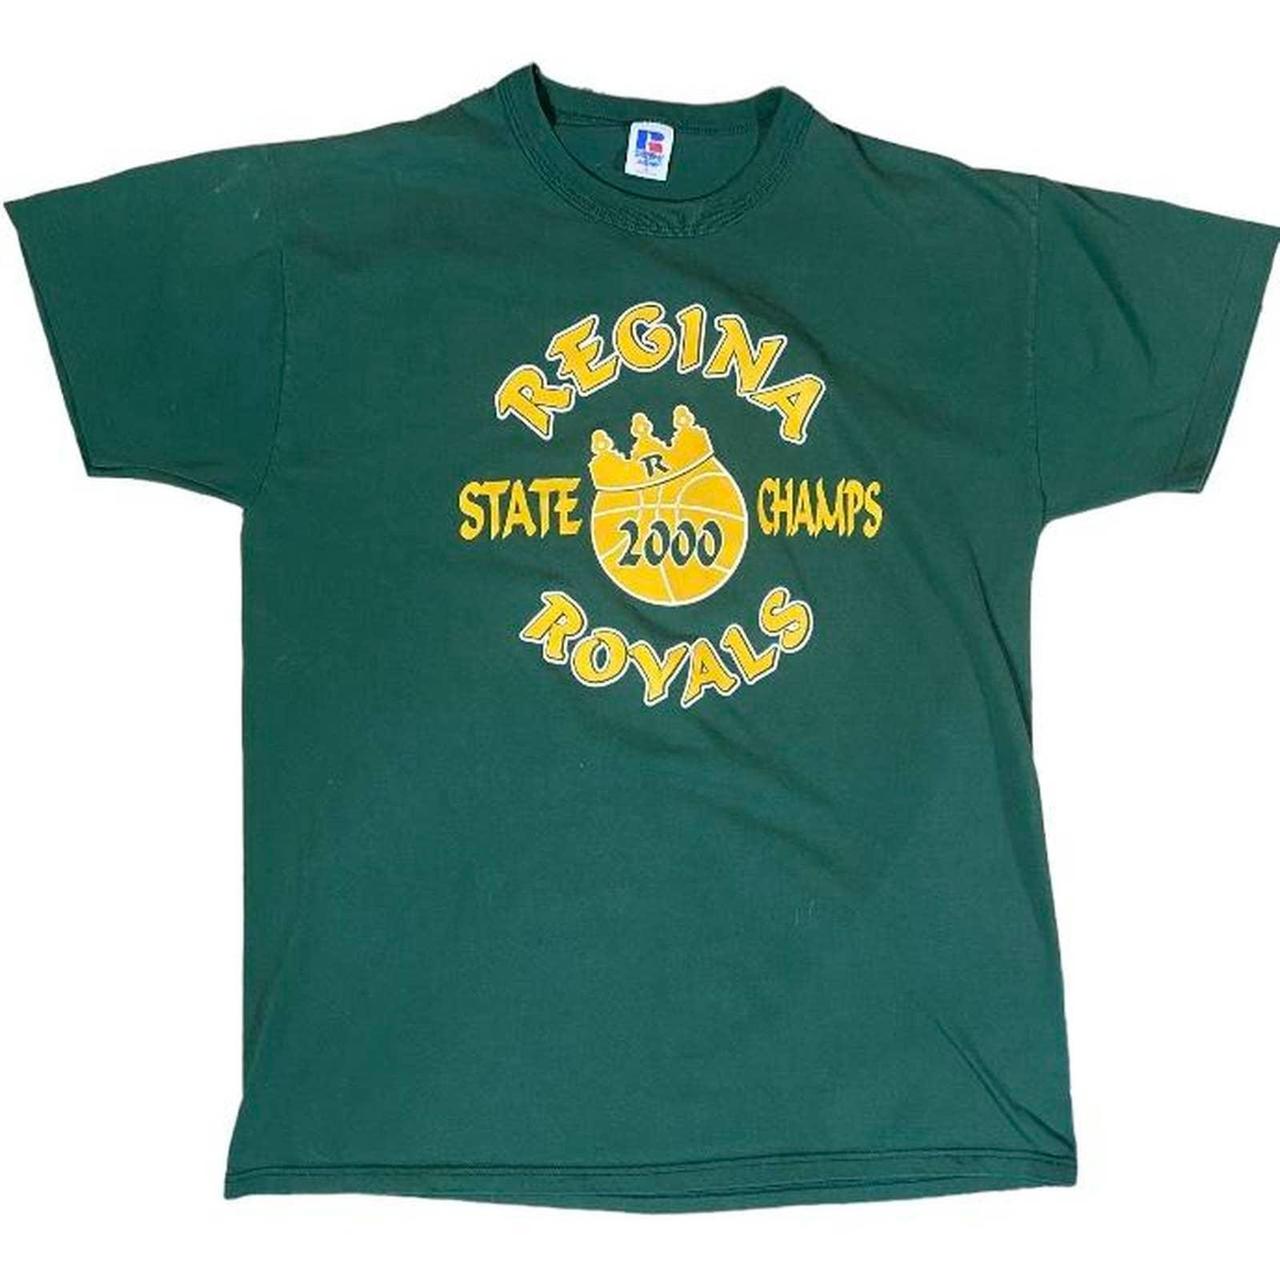 Royals Basketball T Shirt